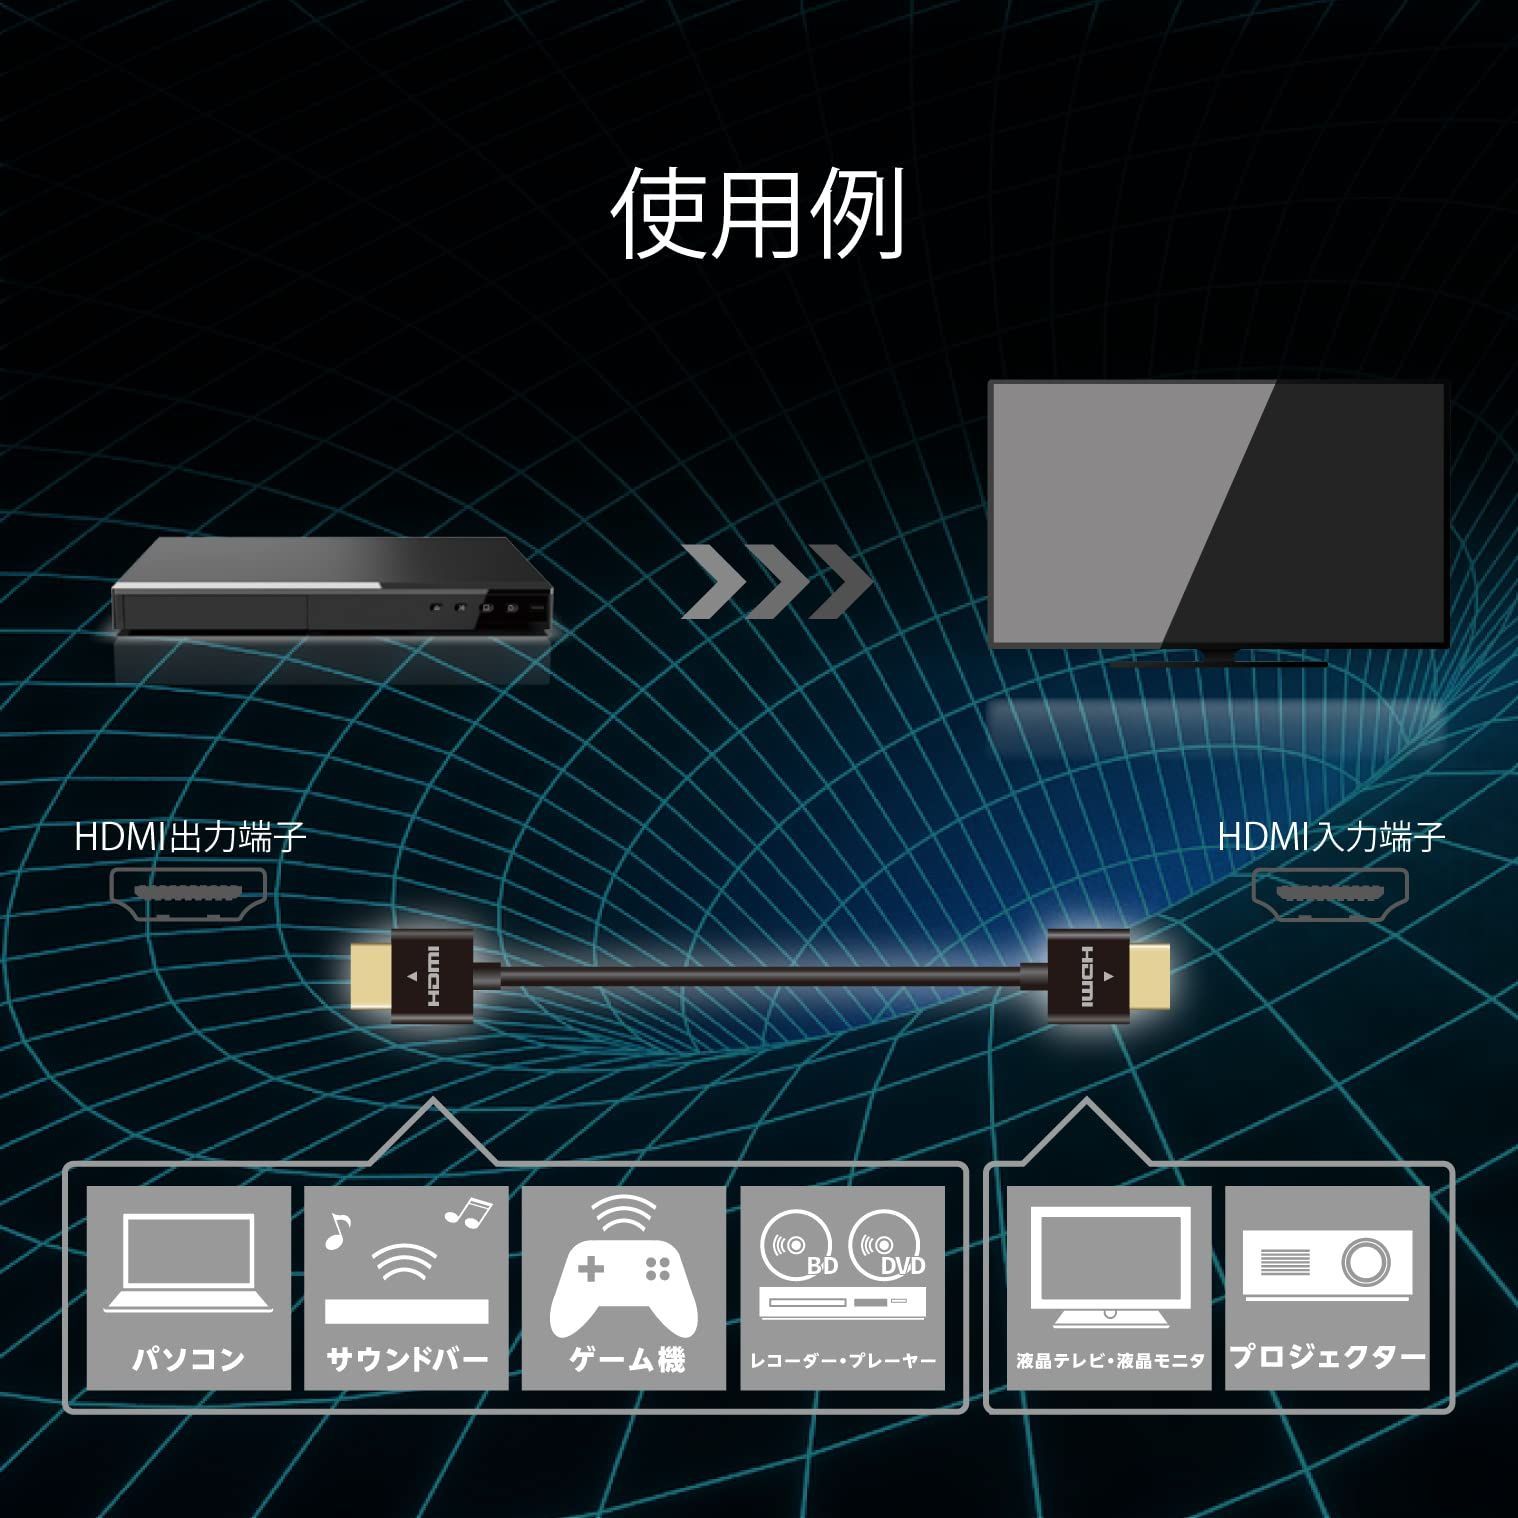 HDMI エレコム ケーブル 極細 ハイスピード 1.5m スーパースリム 4K・2K 【HIGH SPEED with ETHERNET認証済み】 3重シールド 金メッキ ARC テレビ・パソコン・ゲーム機など対応 黒 DH-HD14SS15BK